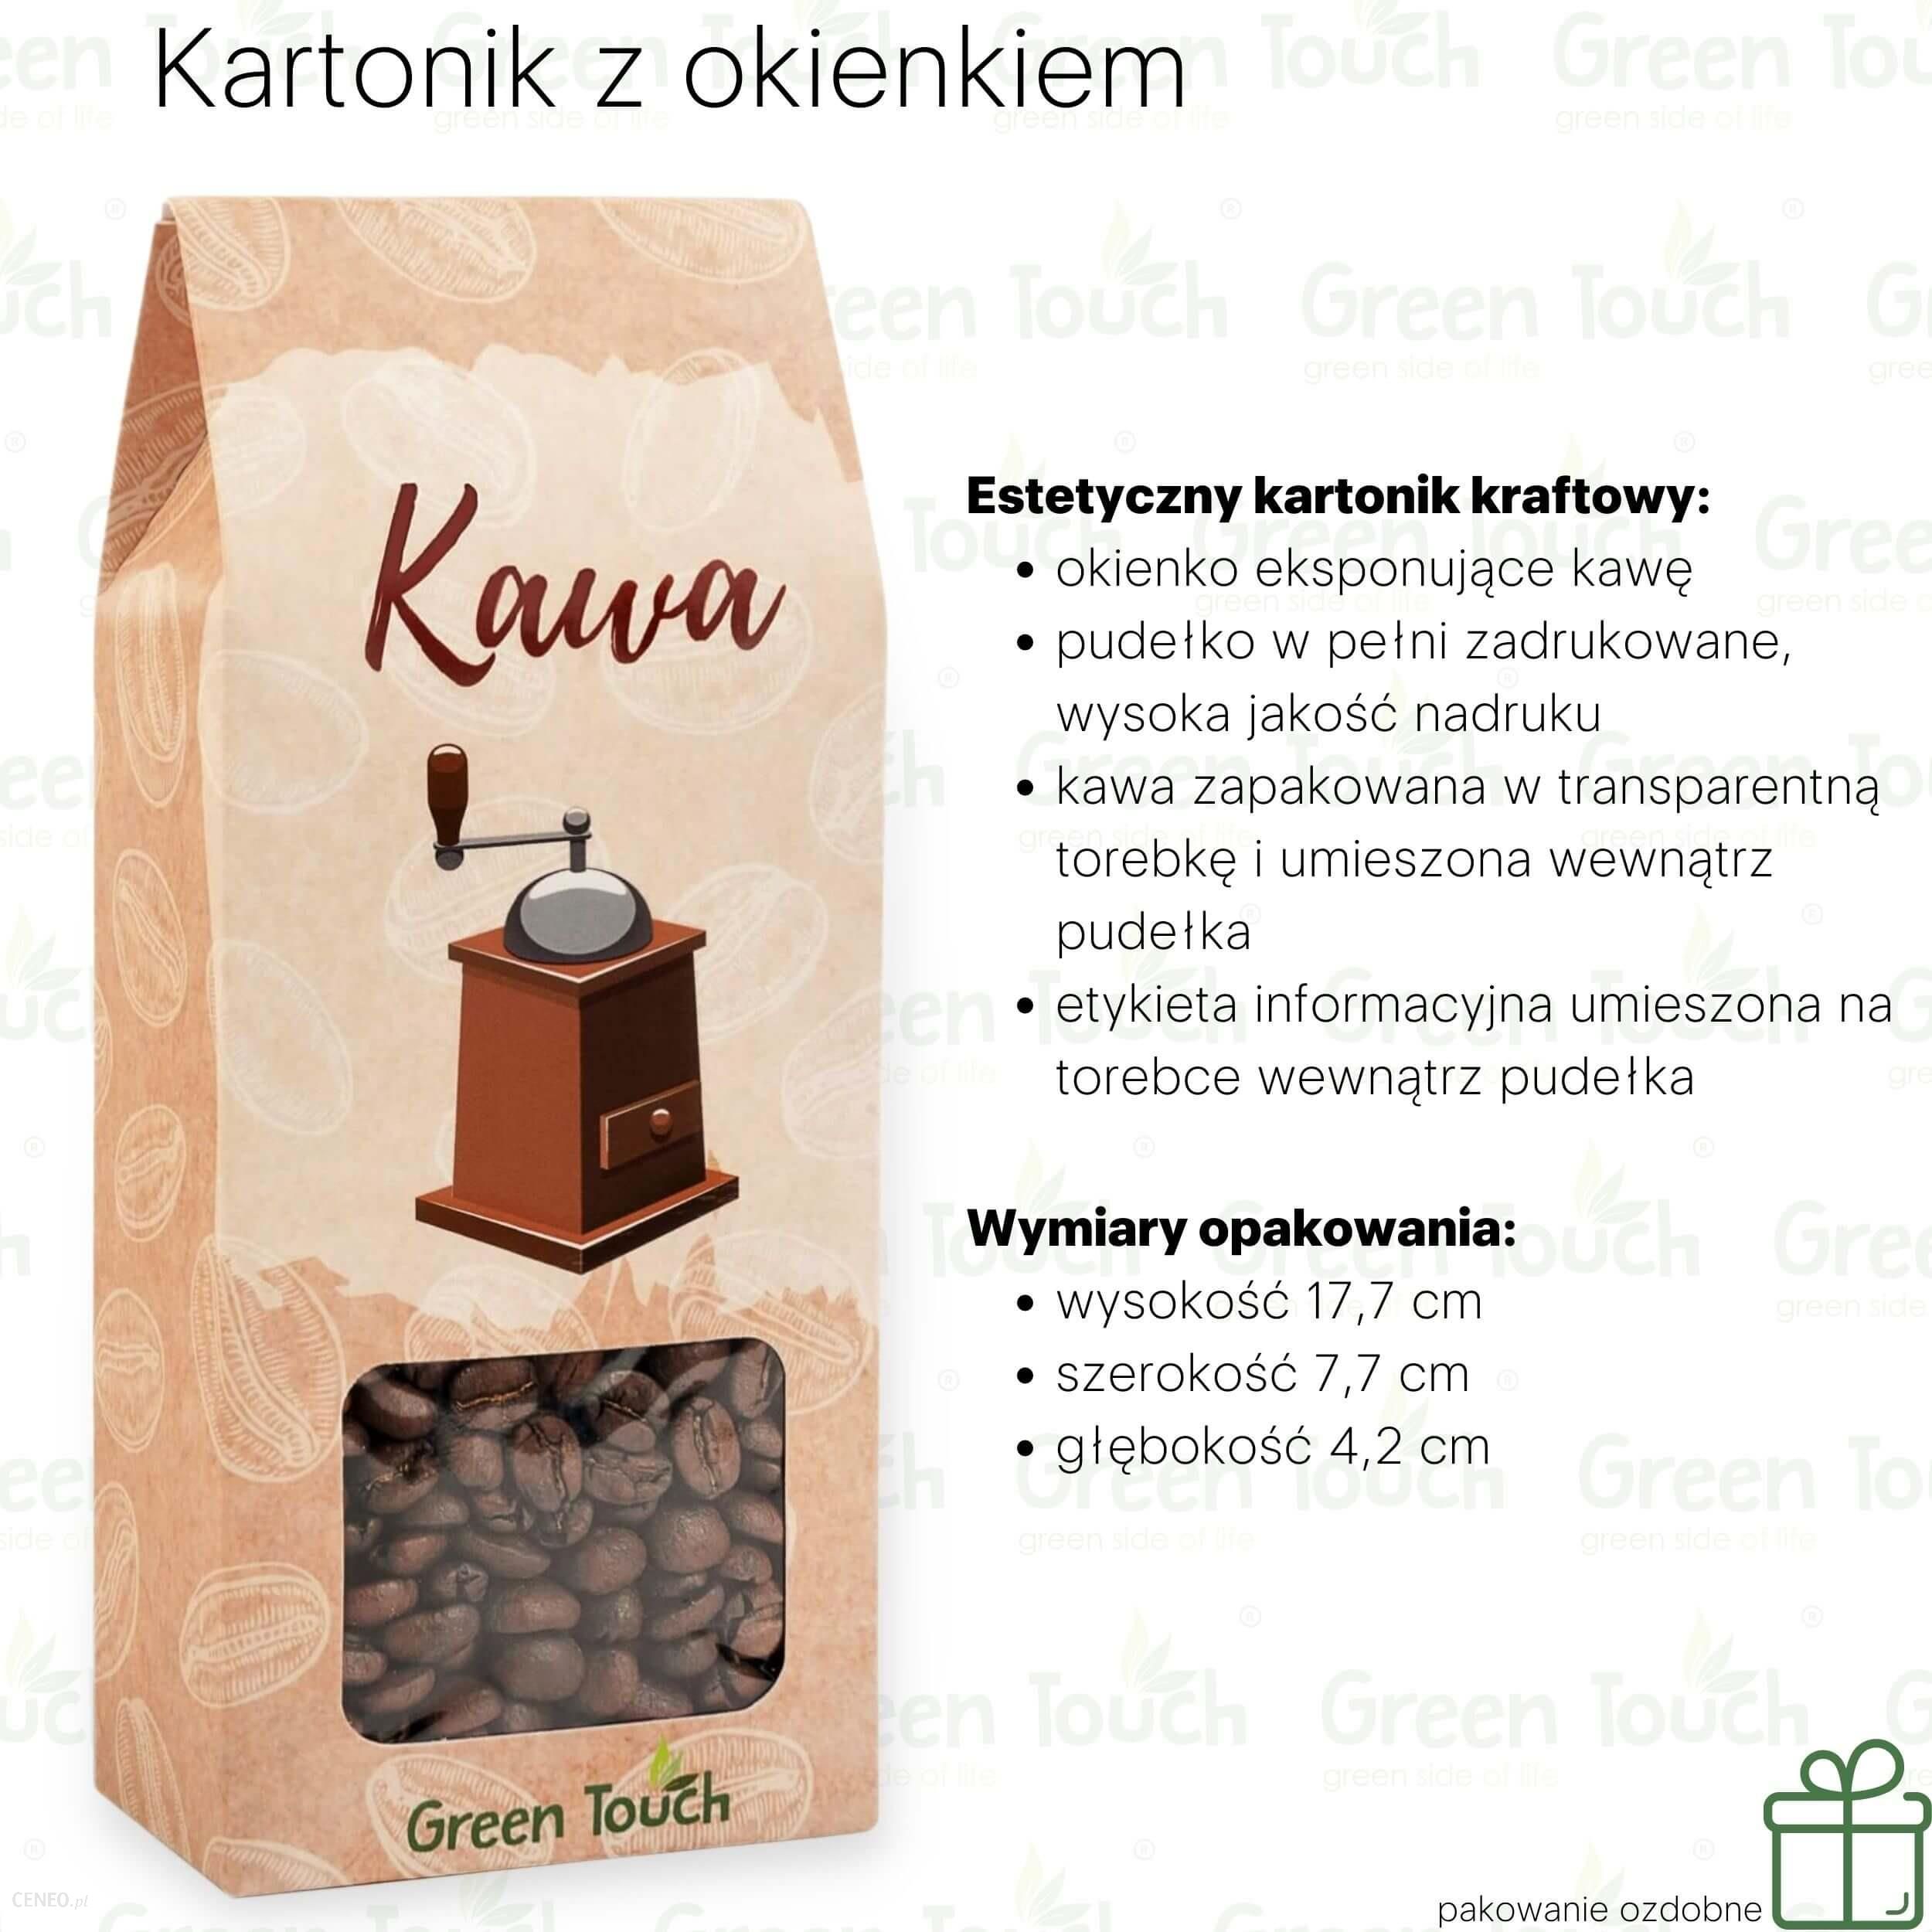 Progressive Kawa ziarnista Marcepanowa (Pakowanie ozdobne, Kartonik z okienkiem 120g)